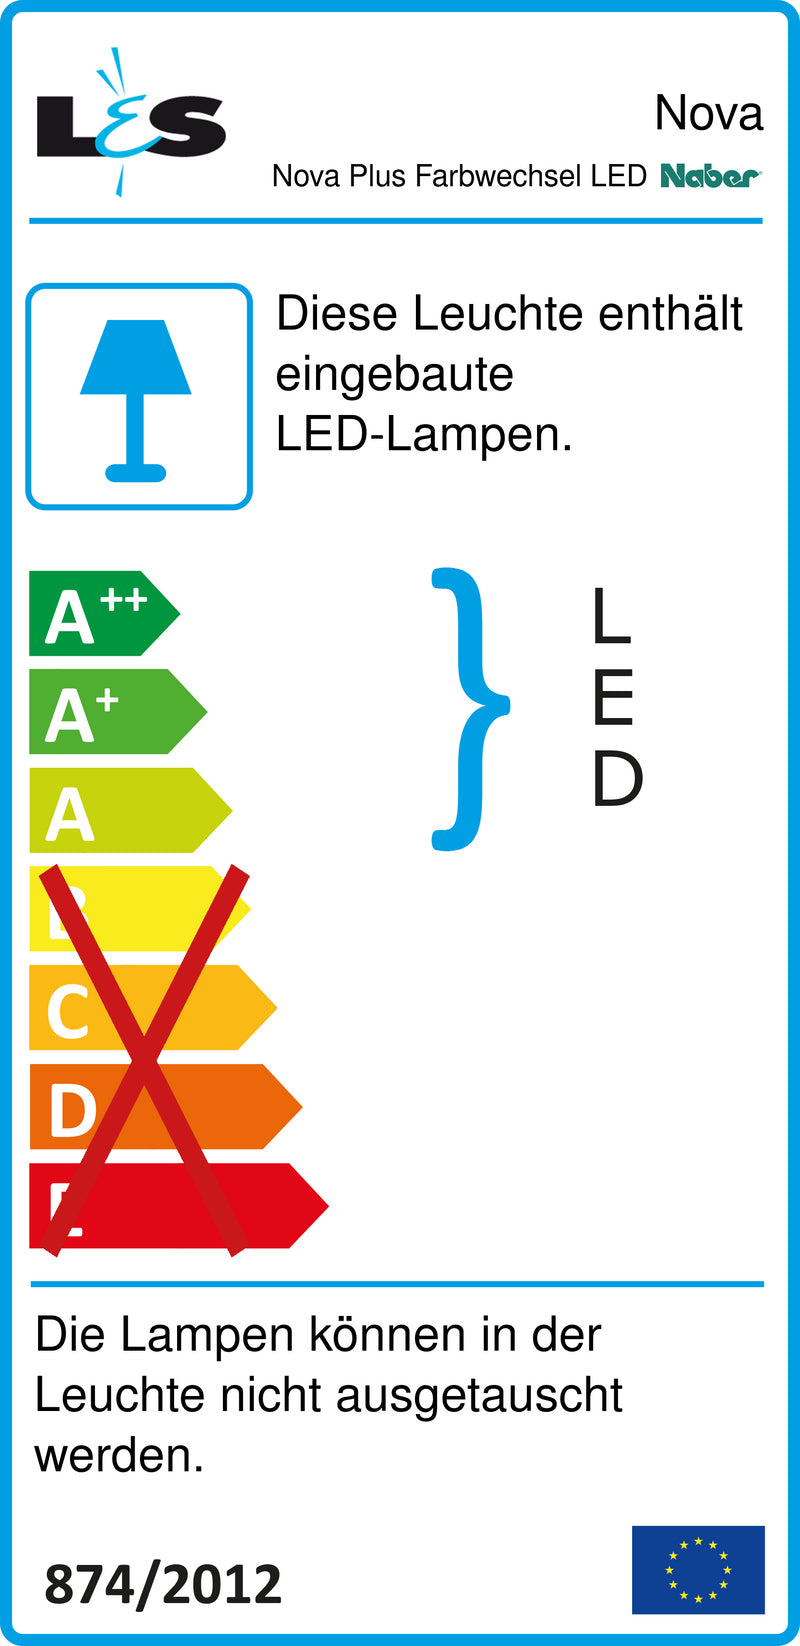 E-Label zu Zeichnung zu Nova Plus Farbwechsel LED als Variante Set-5, edelstahlfarbig von Naber GmbH in der Kategorie Lichttechnik in Österreich auf conceptshop.at